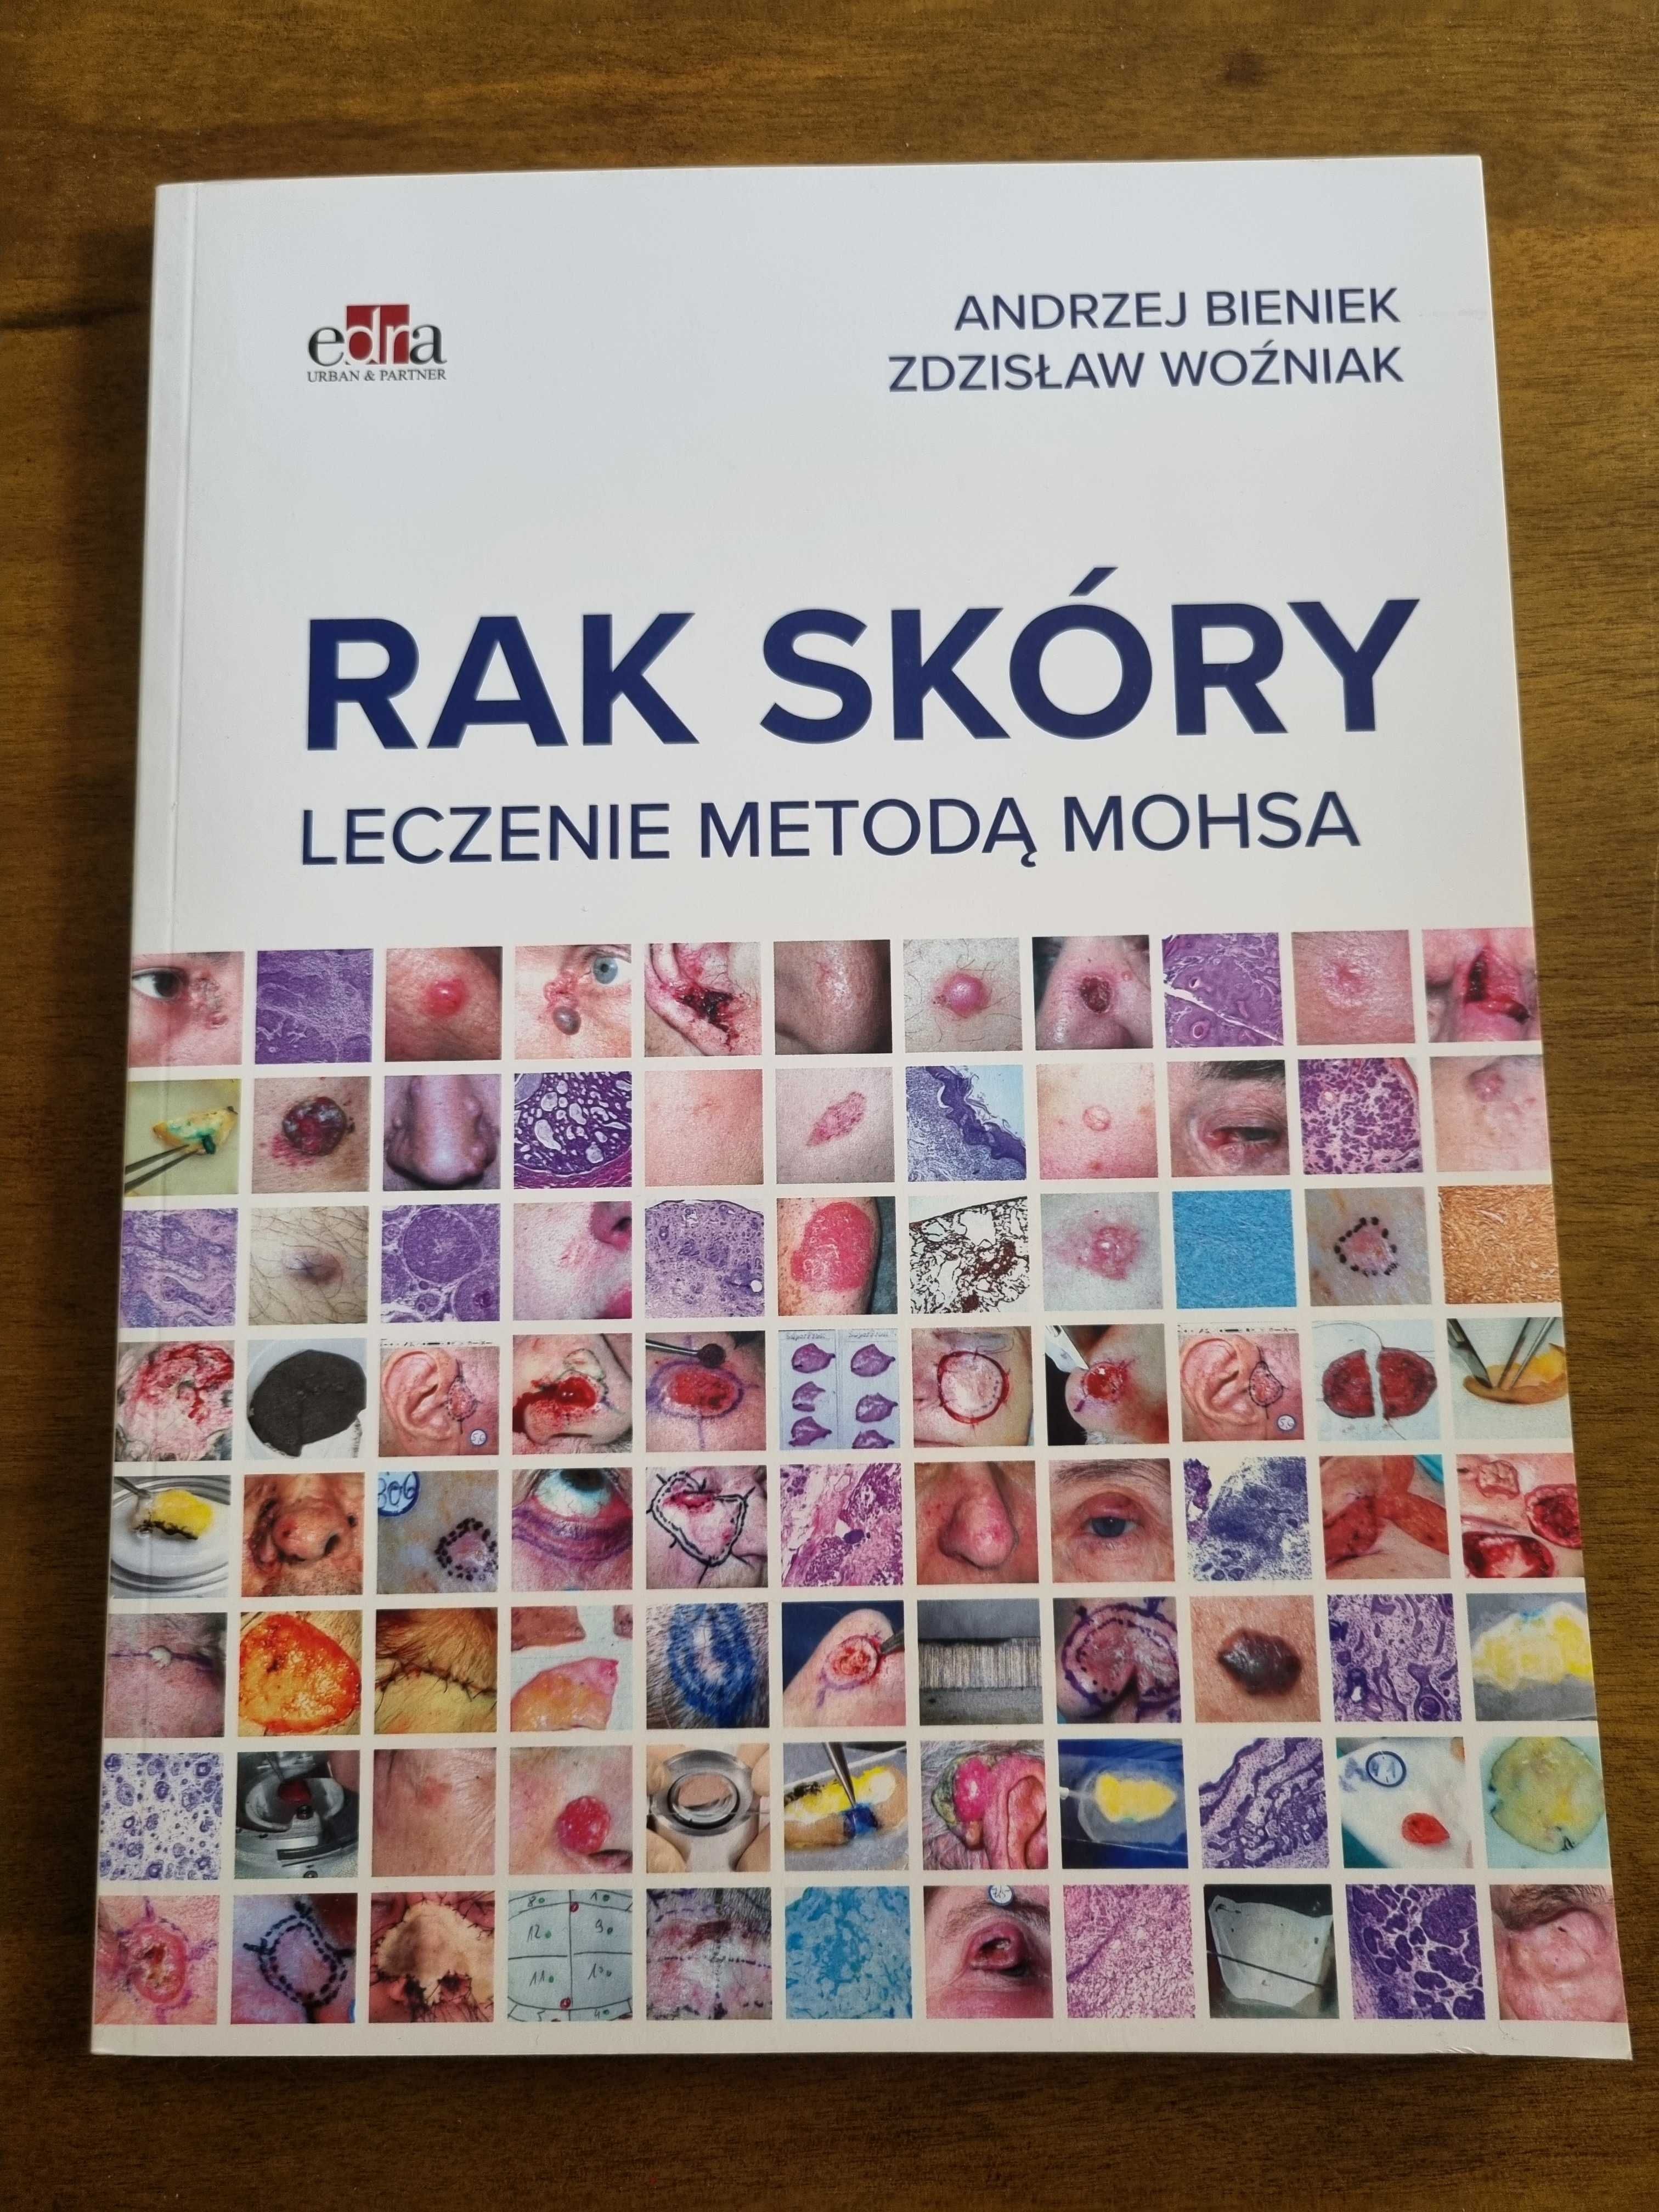 Nowa książka "Rak skóry leczenie metodą Mohsa" A. Bieniek, Z. Woźniak